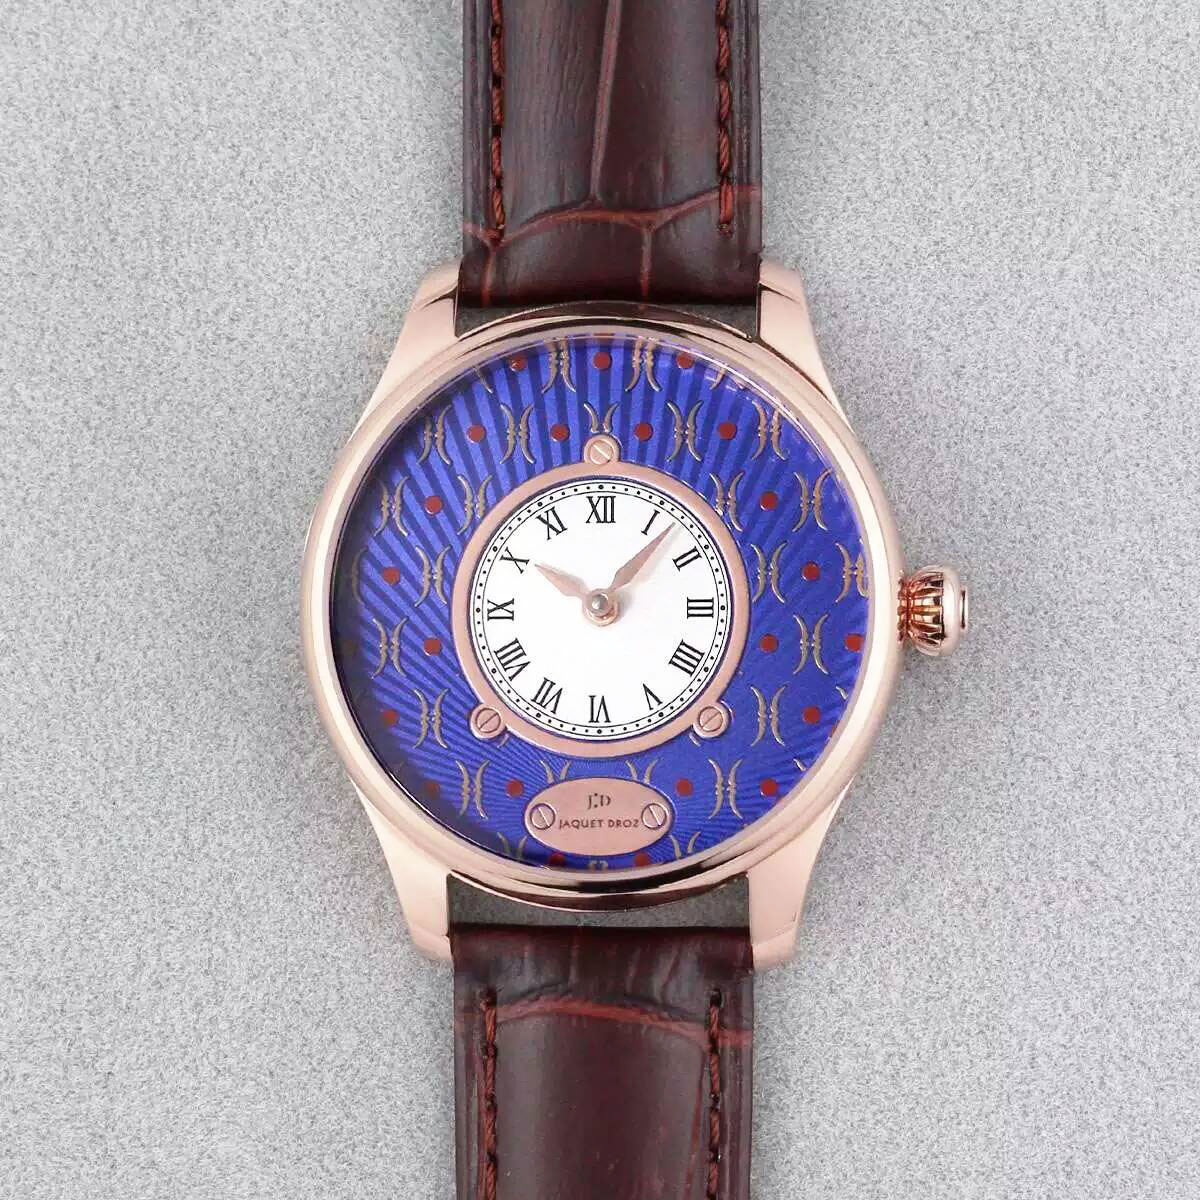 雅克羅德 Jaquet-Droz 藝術工坊系列腕錶 搭載進口9015機芯